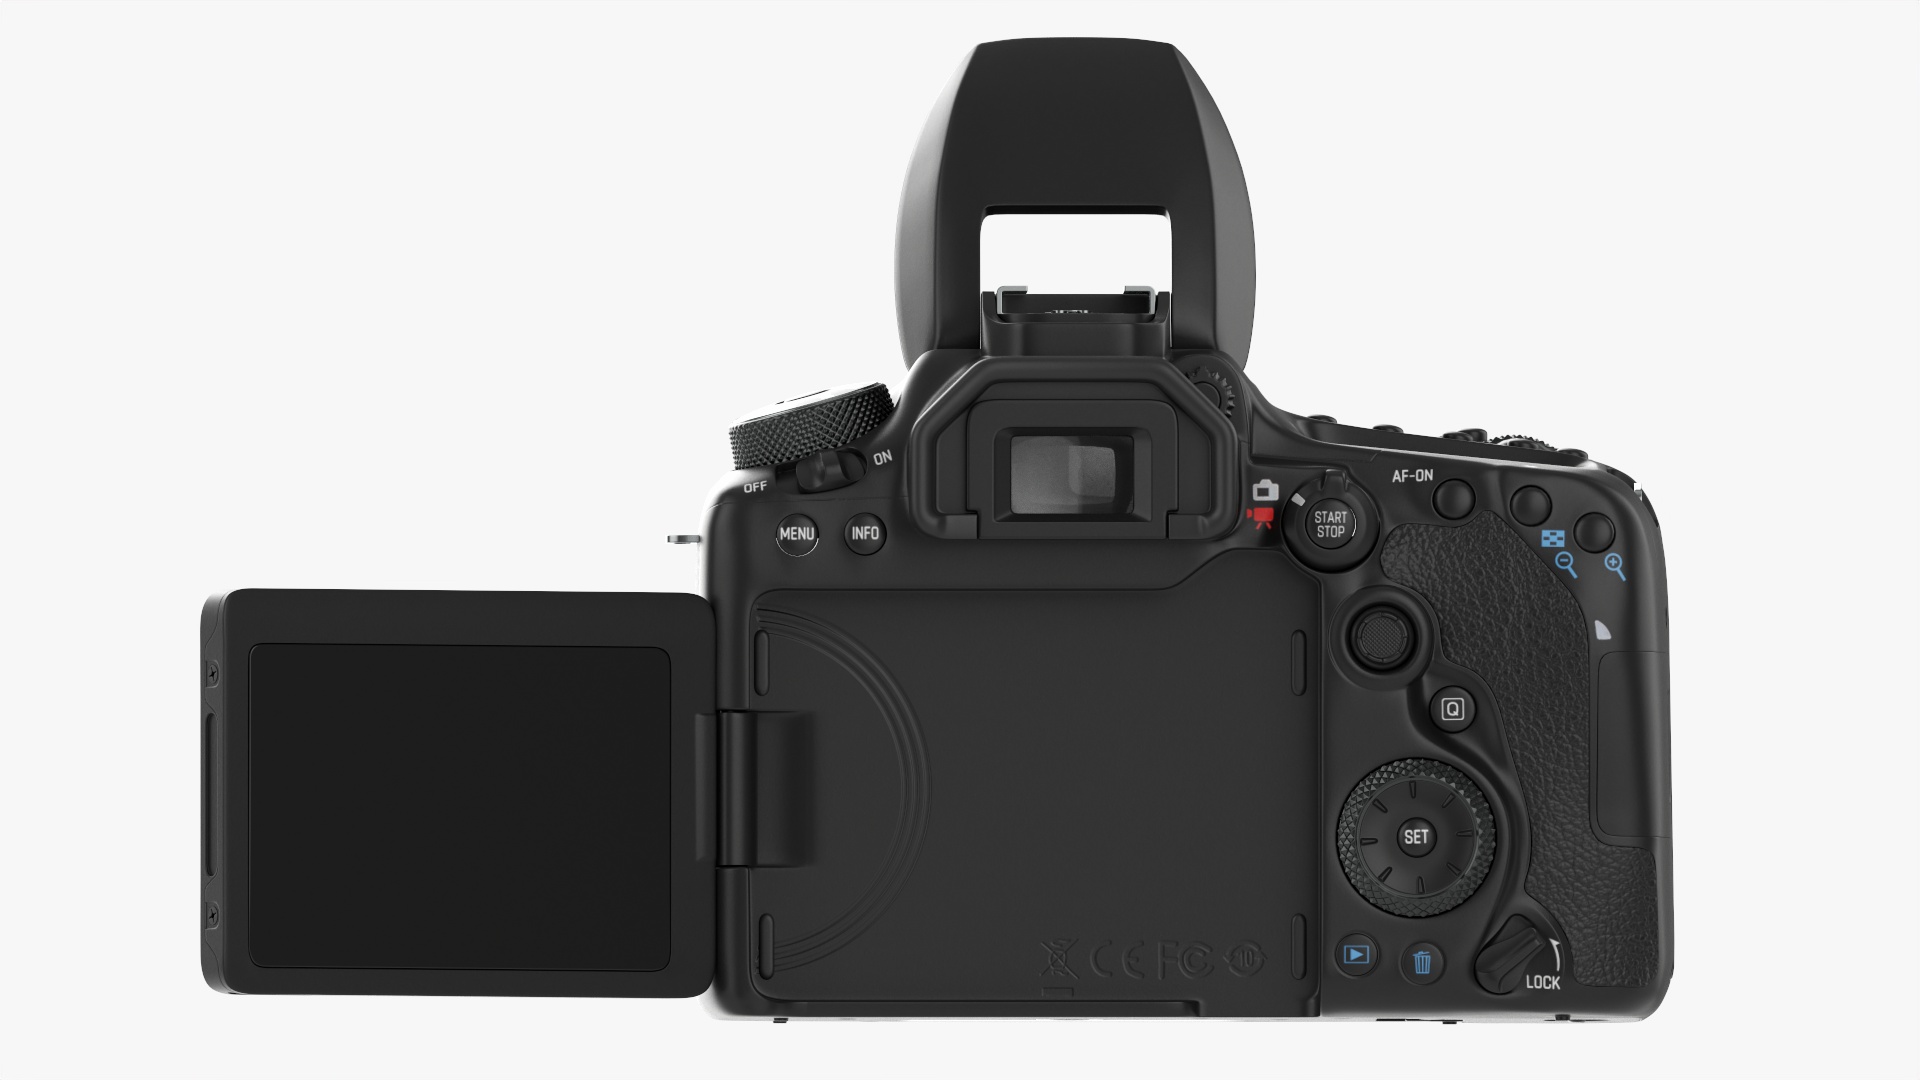 Canon EOS 90D DSLR camera